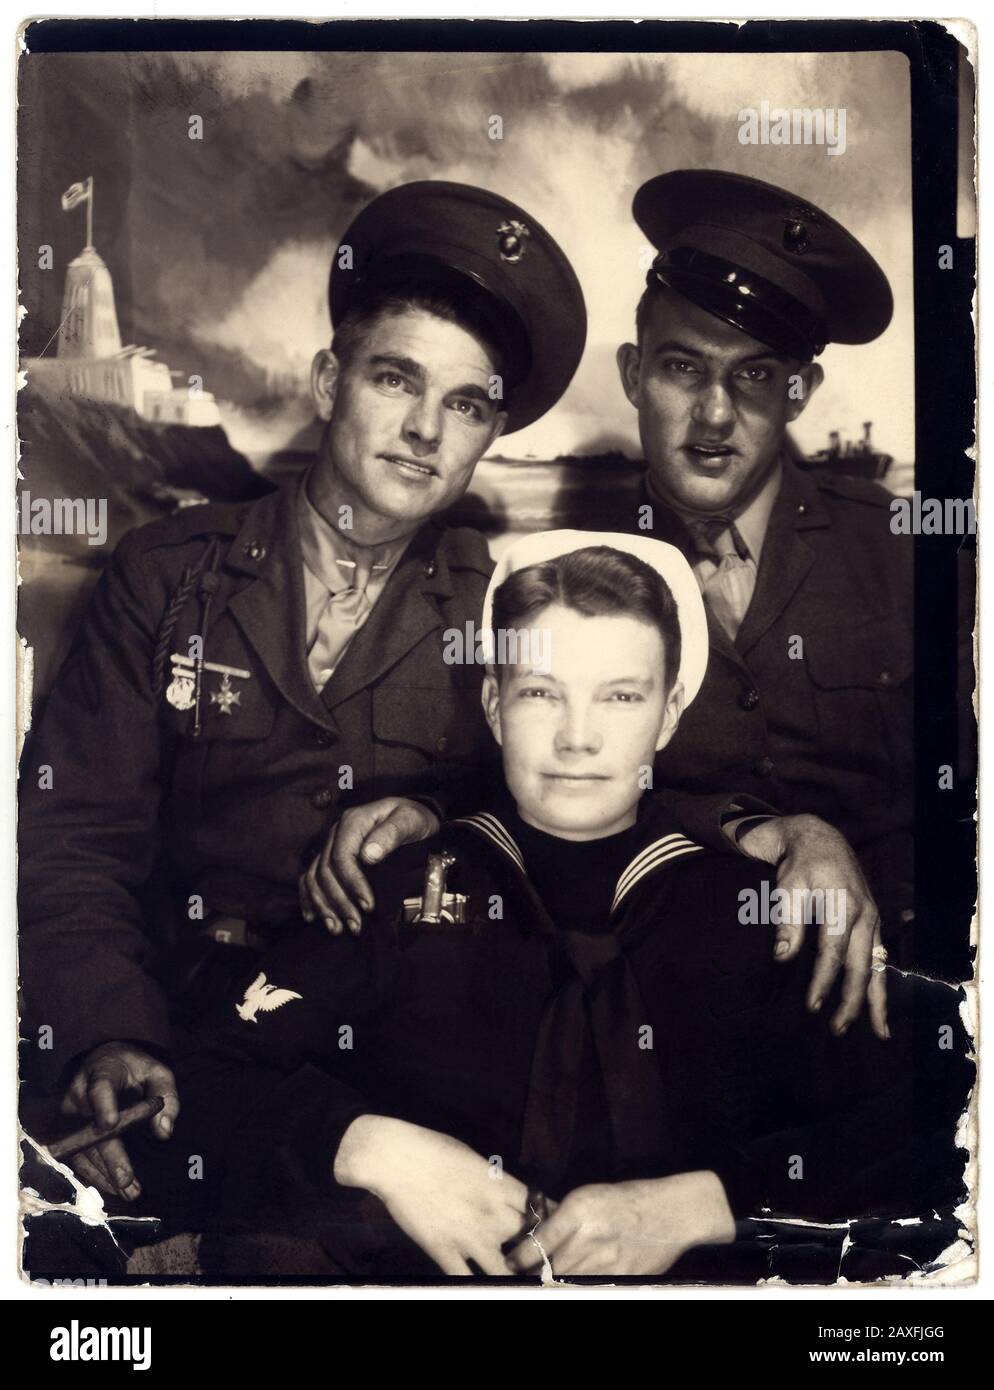 1940 ca , USA : Due militari DELL'ESERCITO americano con un marinaio ( Paul  Morris ), Photoboot - UNIFORMA MILITARE - uomo uomo HANDOME - CUCCETTE -  cappello - cappello - UNIFORME